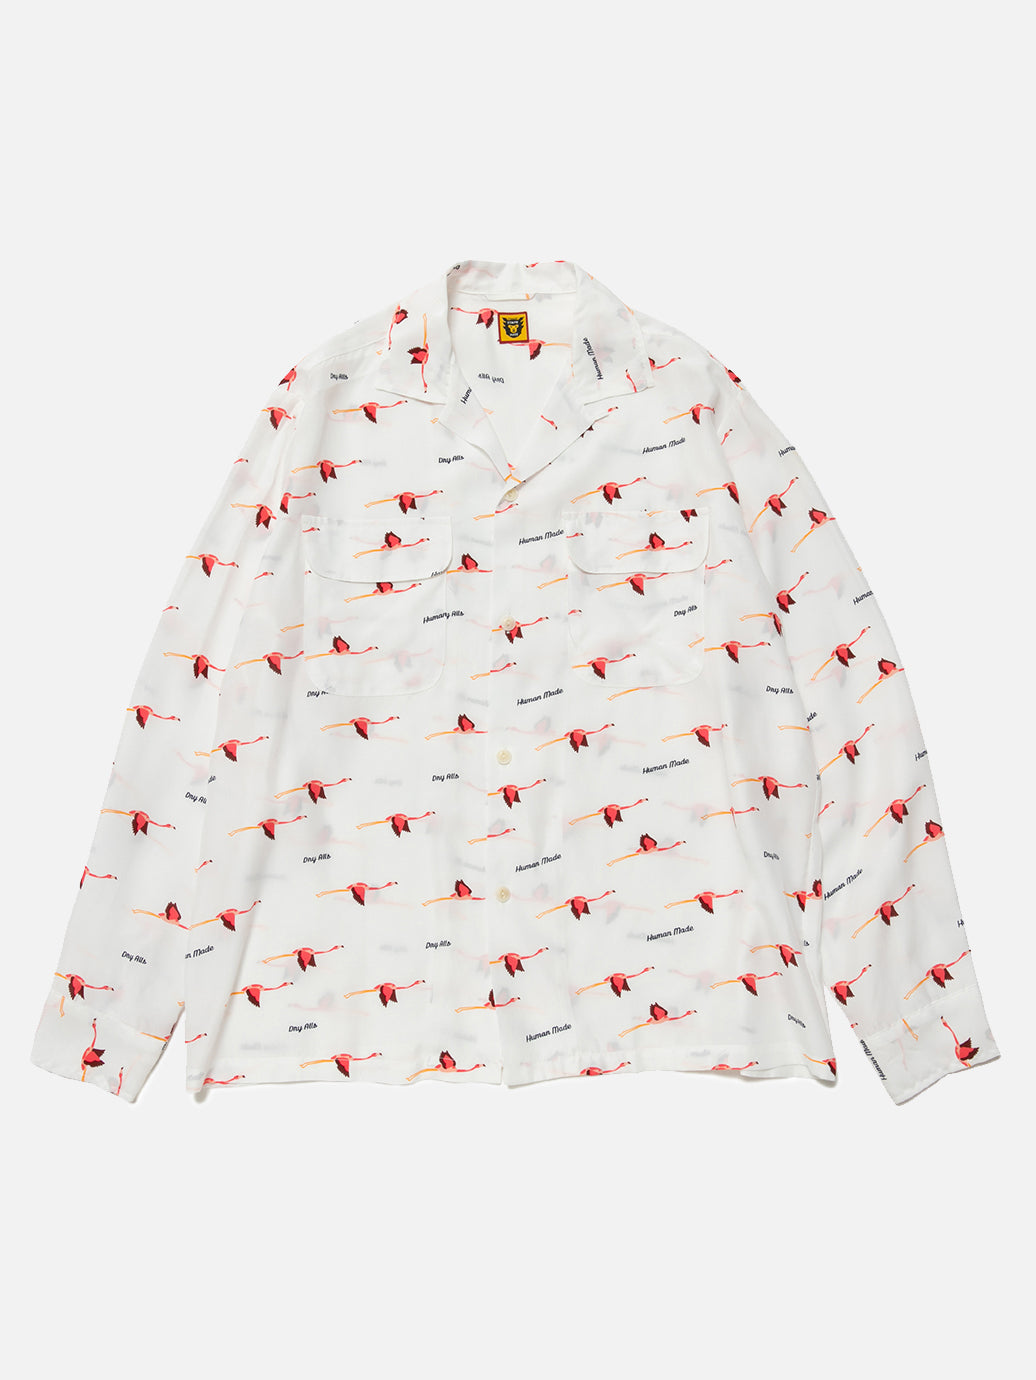 Human Made Flamingo Open Collar L/S Shirt